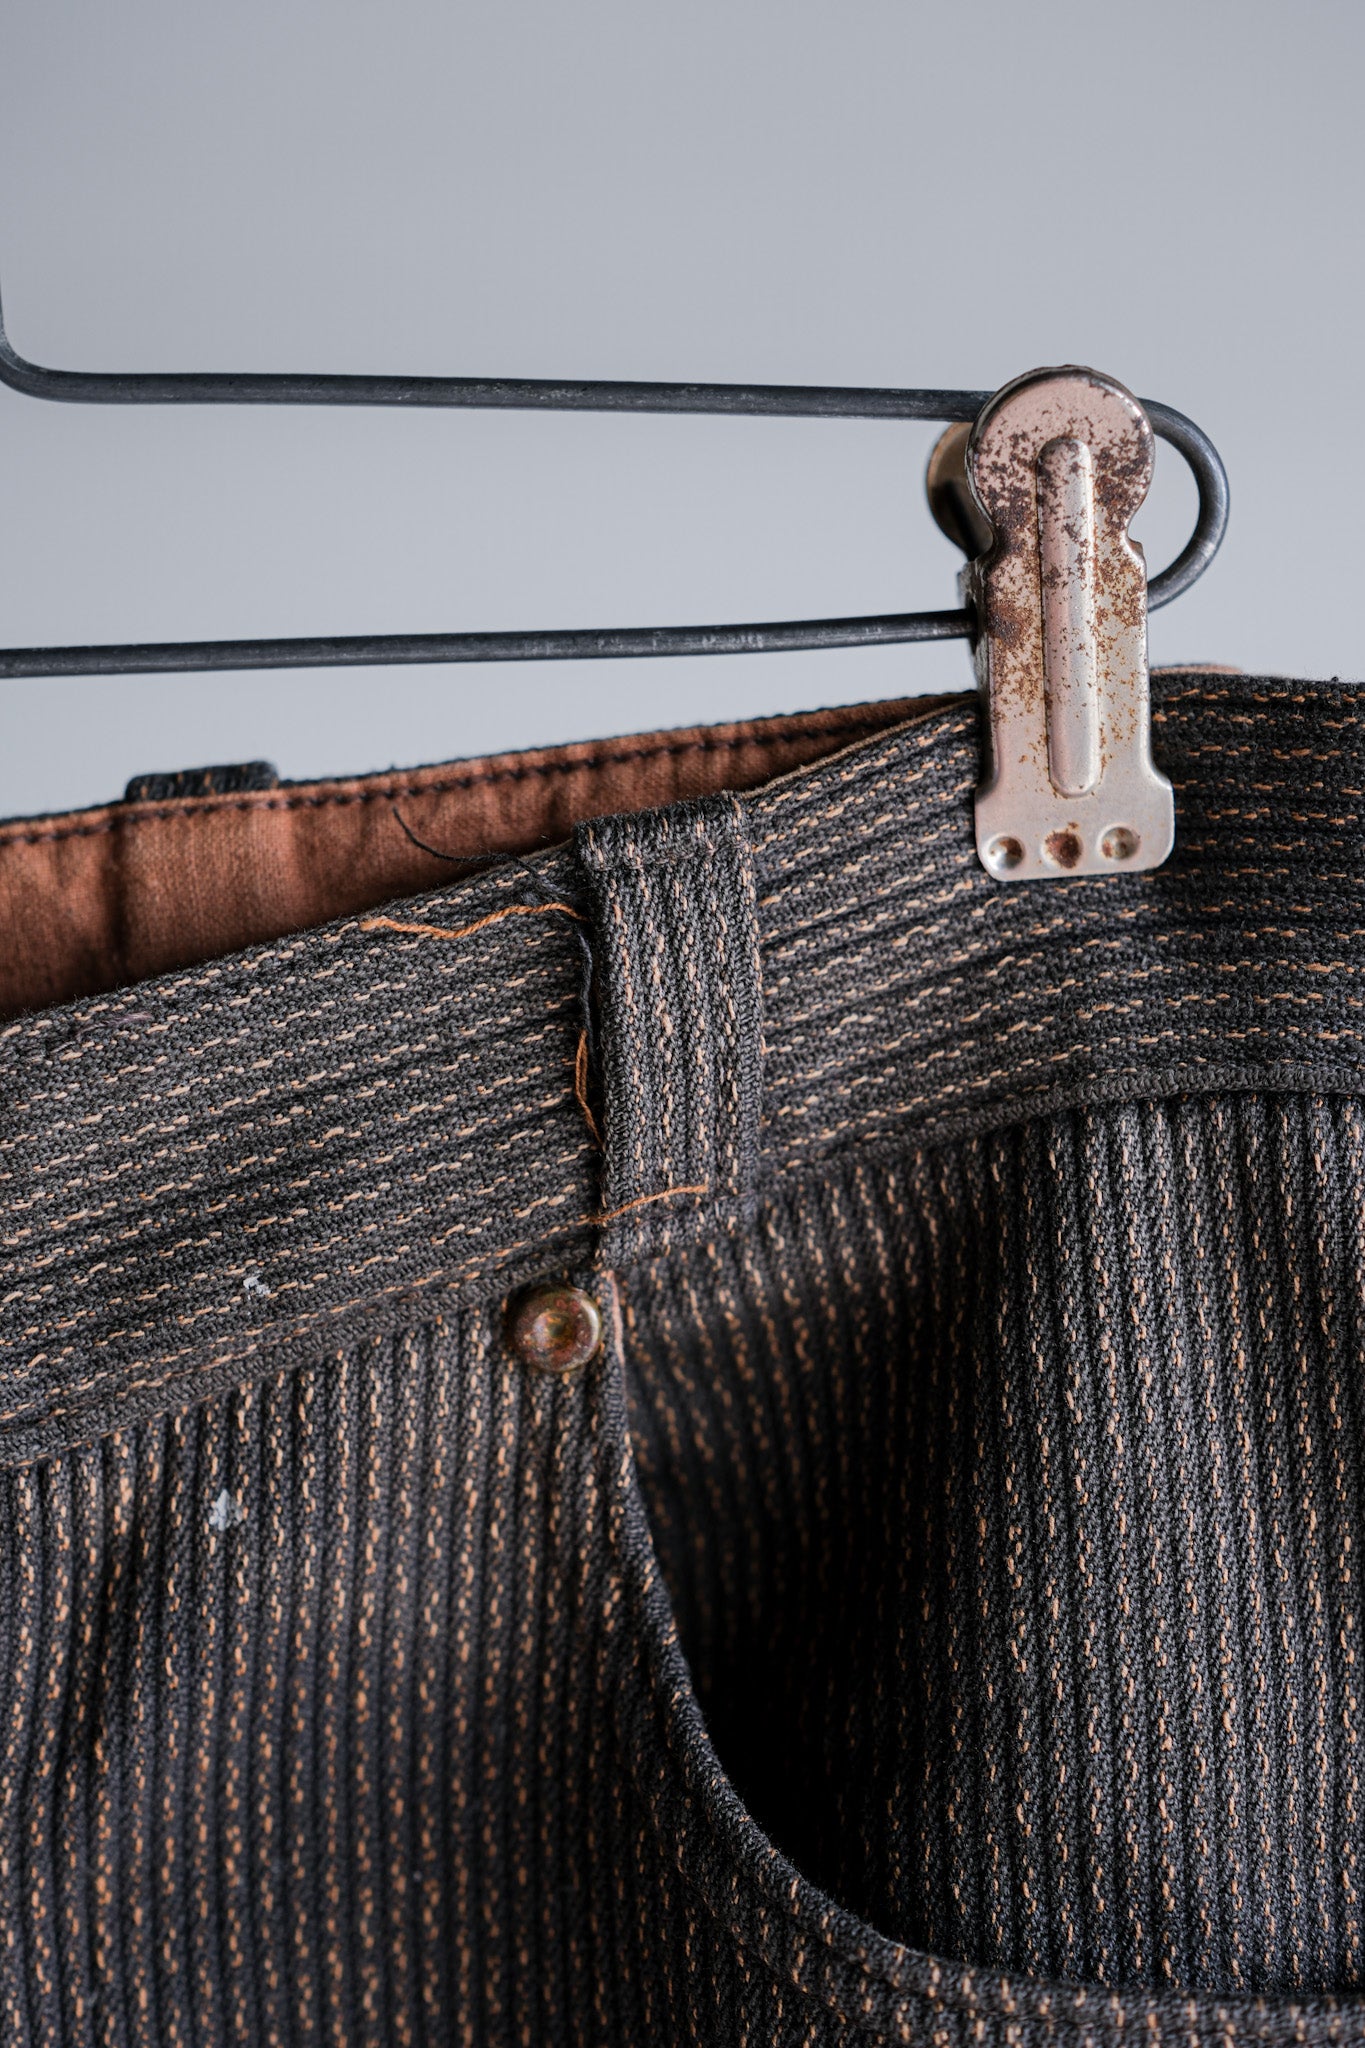 [〜50年代]法國複雜的混合棉質拼圖褲子尺寸。44-76“不尋常的面料”“ Le Montst。Michel”